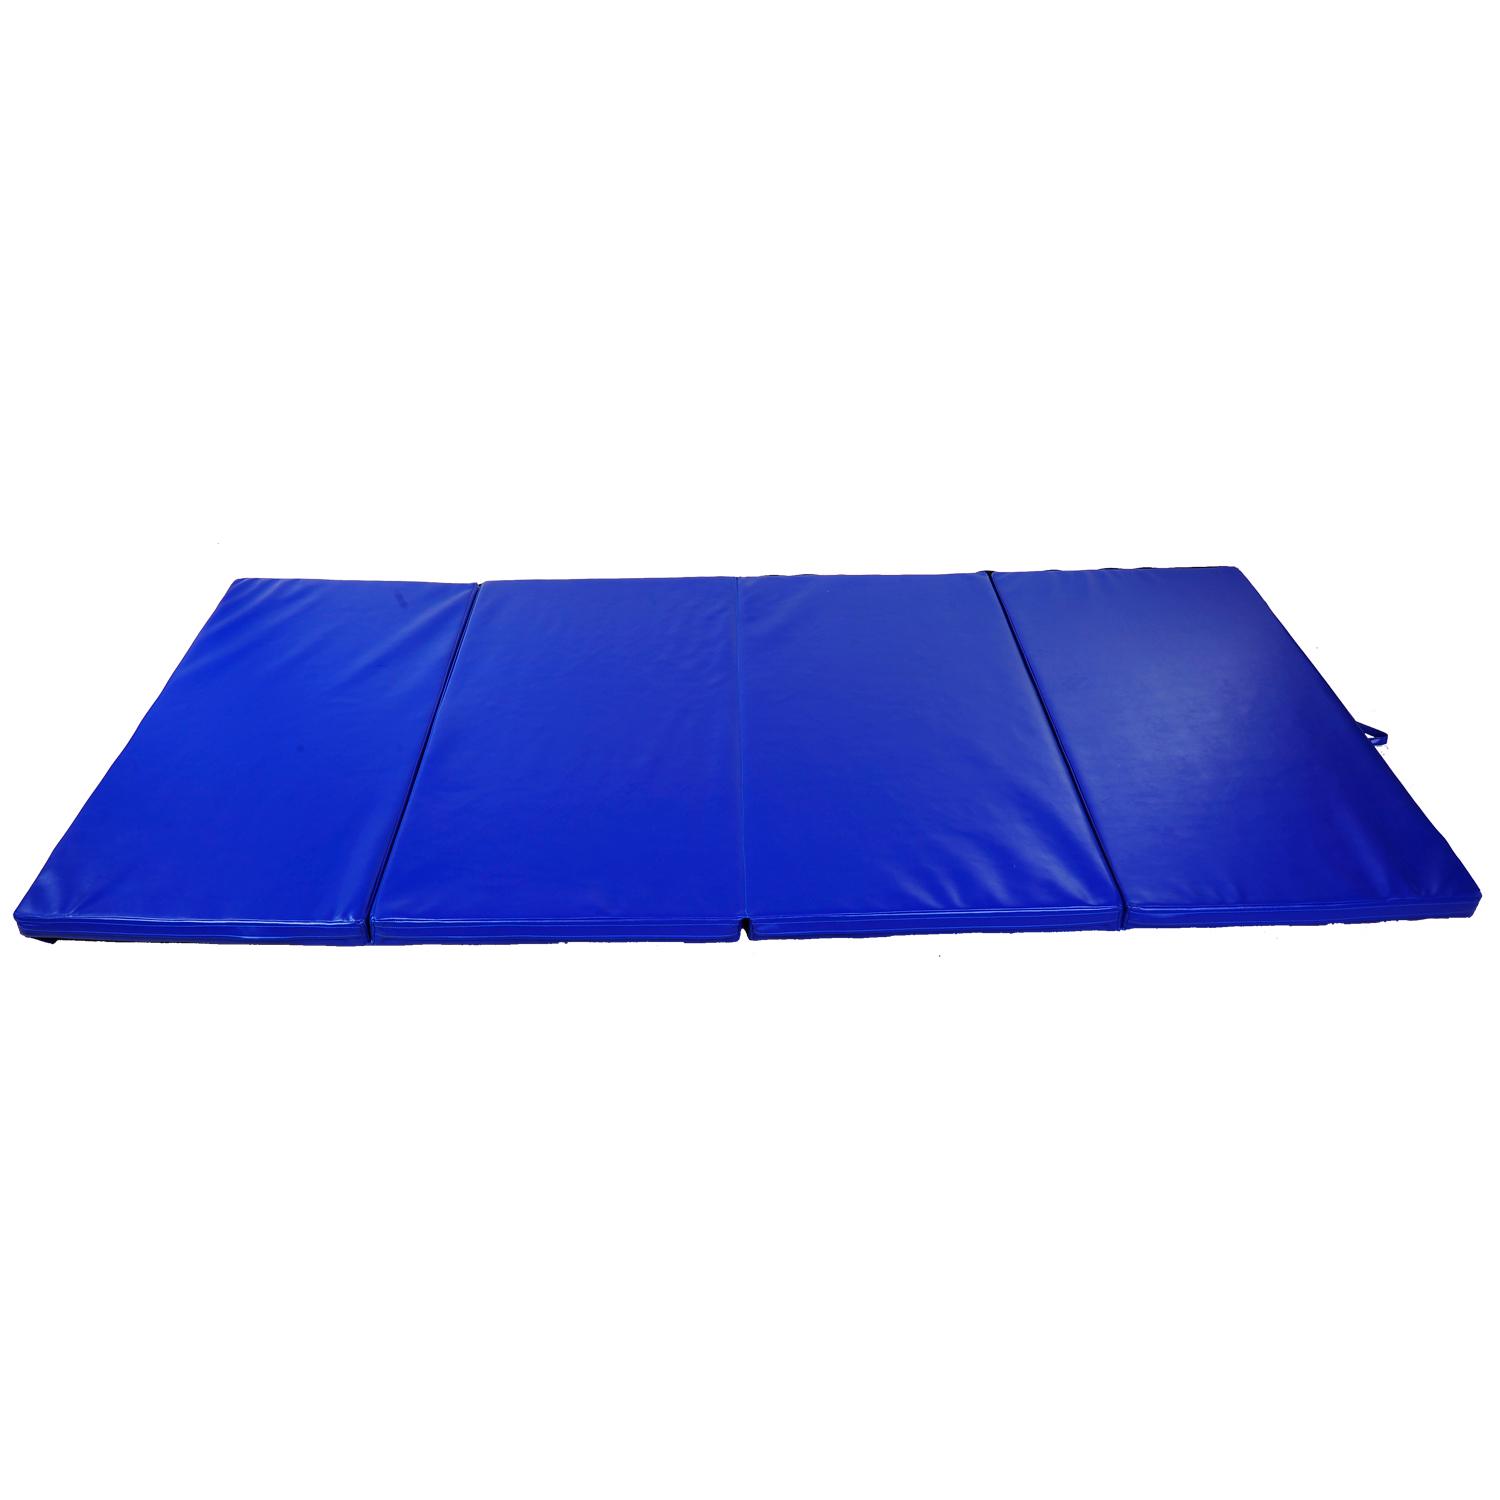 HOMCOM Tapis de Sol Gym Fitness Epais Portable 3m Bleu natte matelas  pliable 10 pieds 305 x 122 cm 